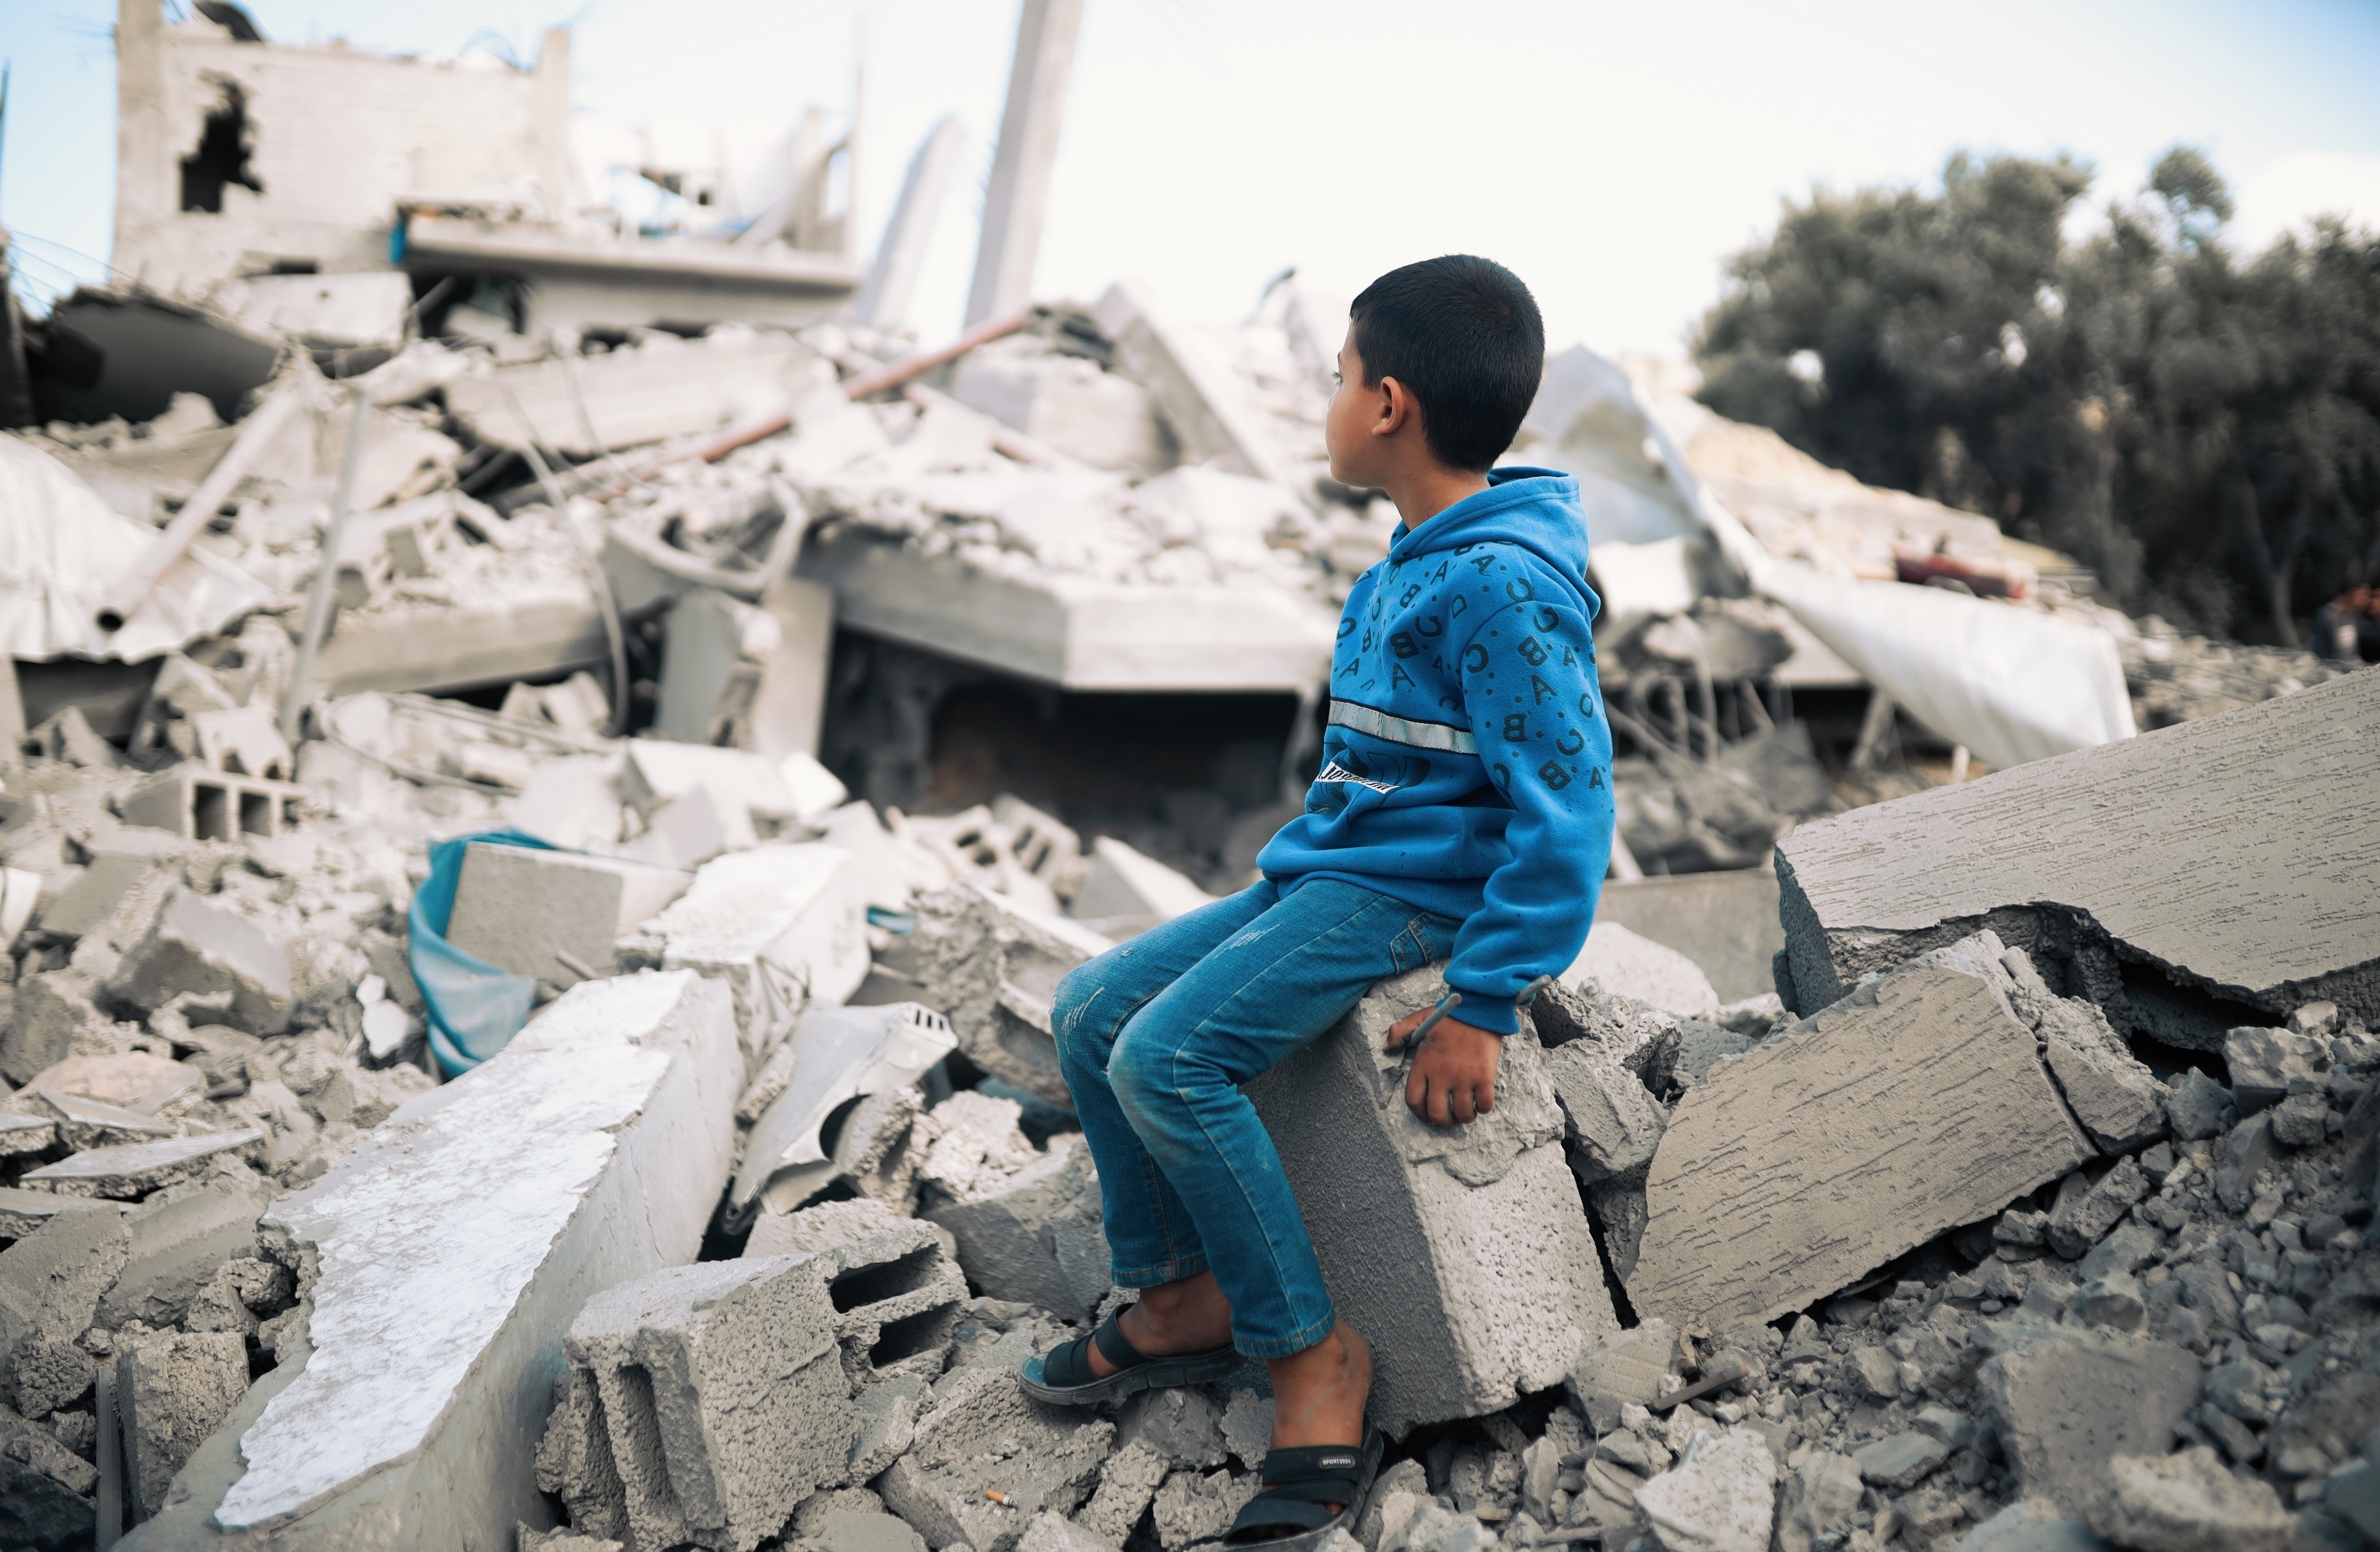 gutt sitter i ruiner av bygning